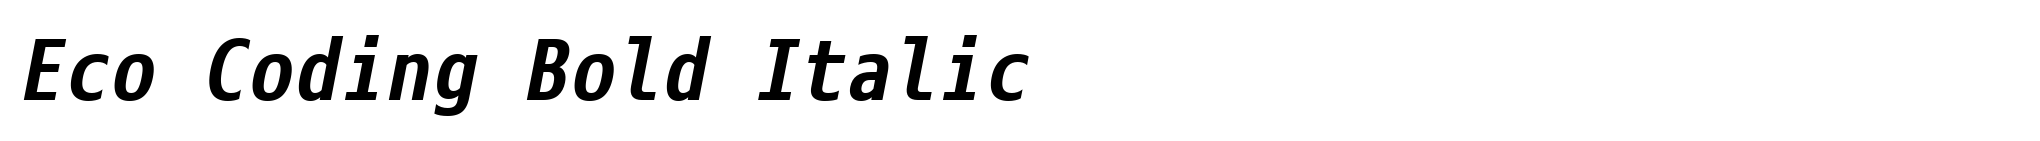 Eco Coding Bold Italic image